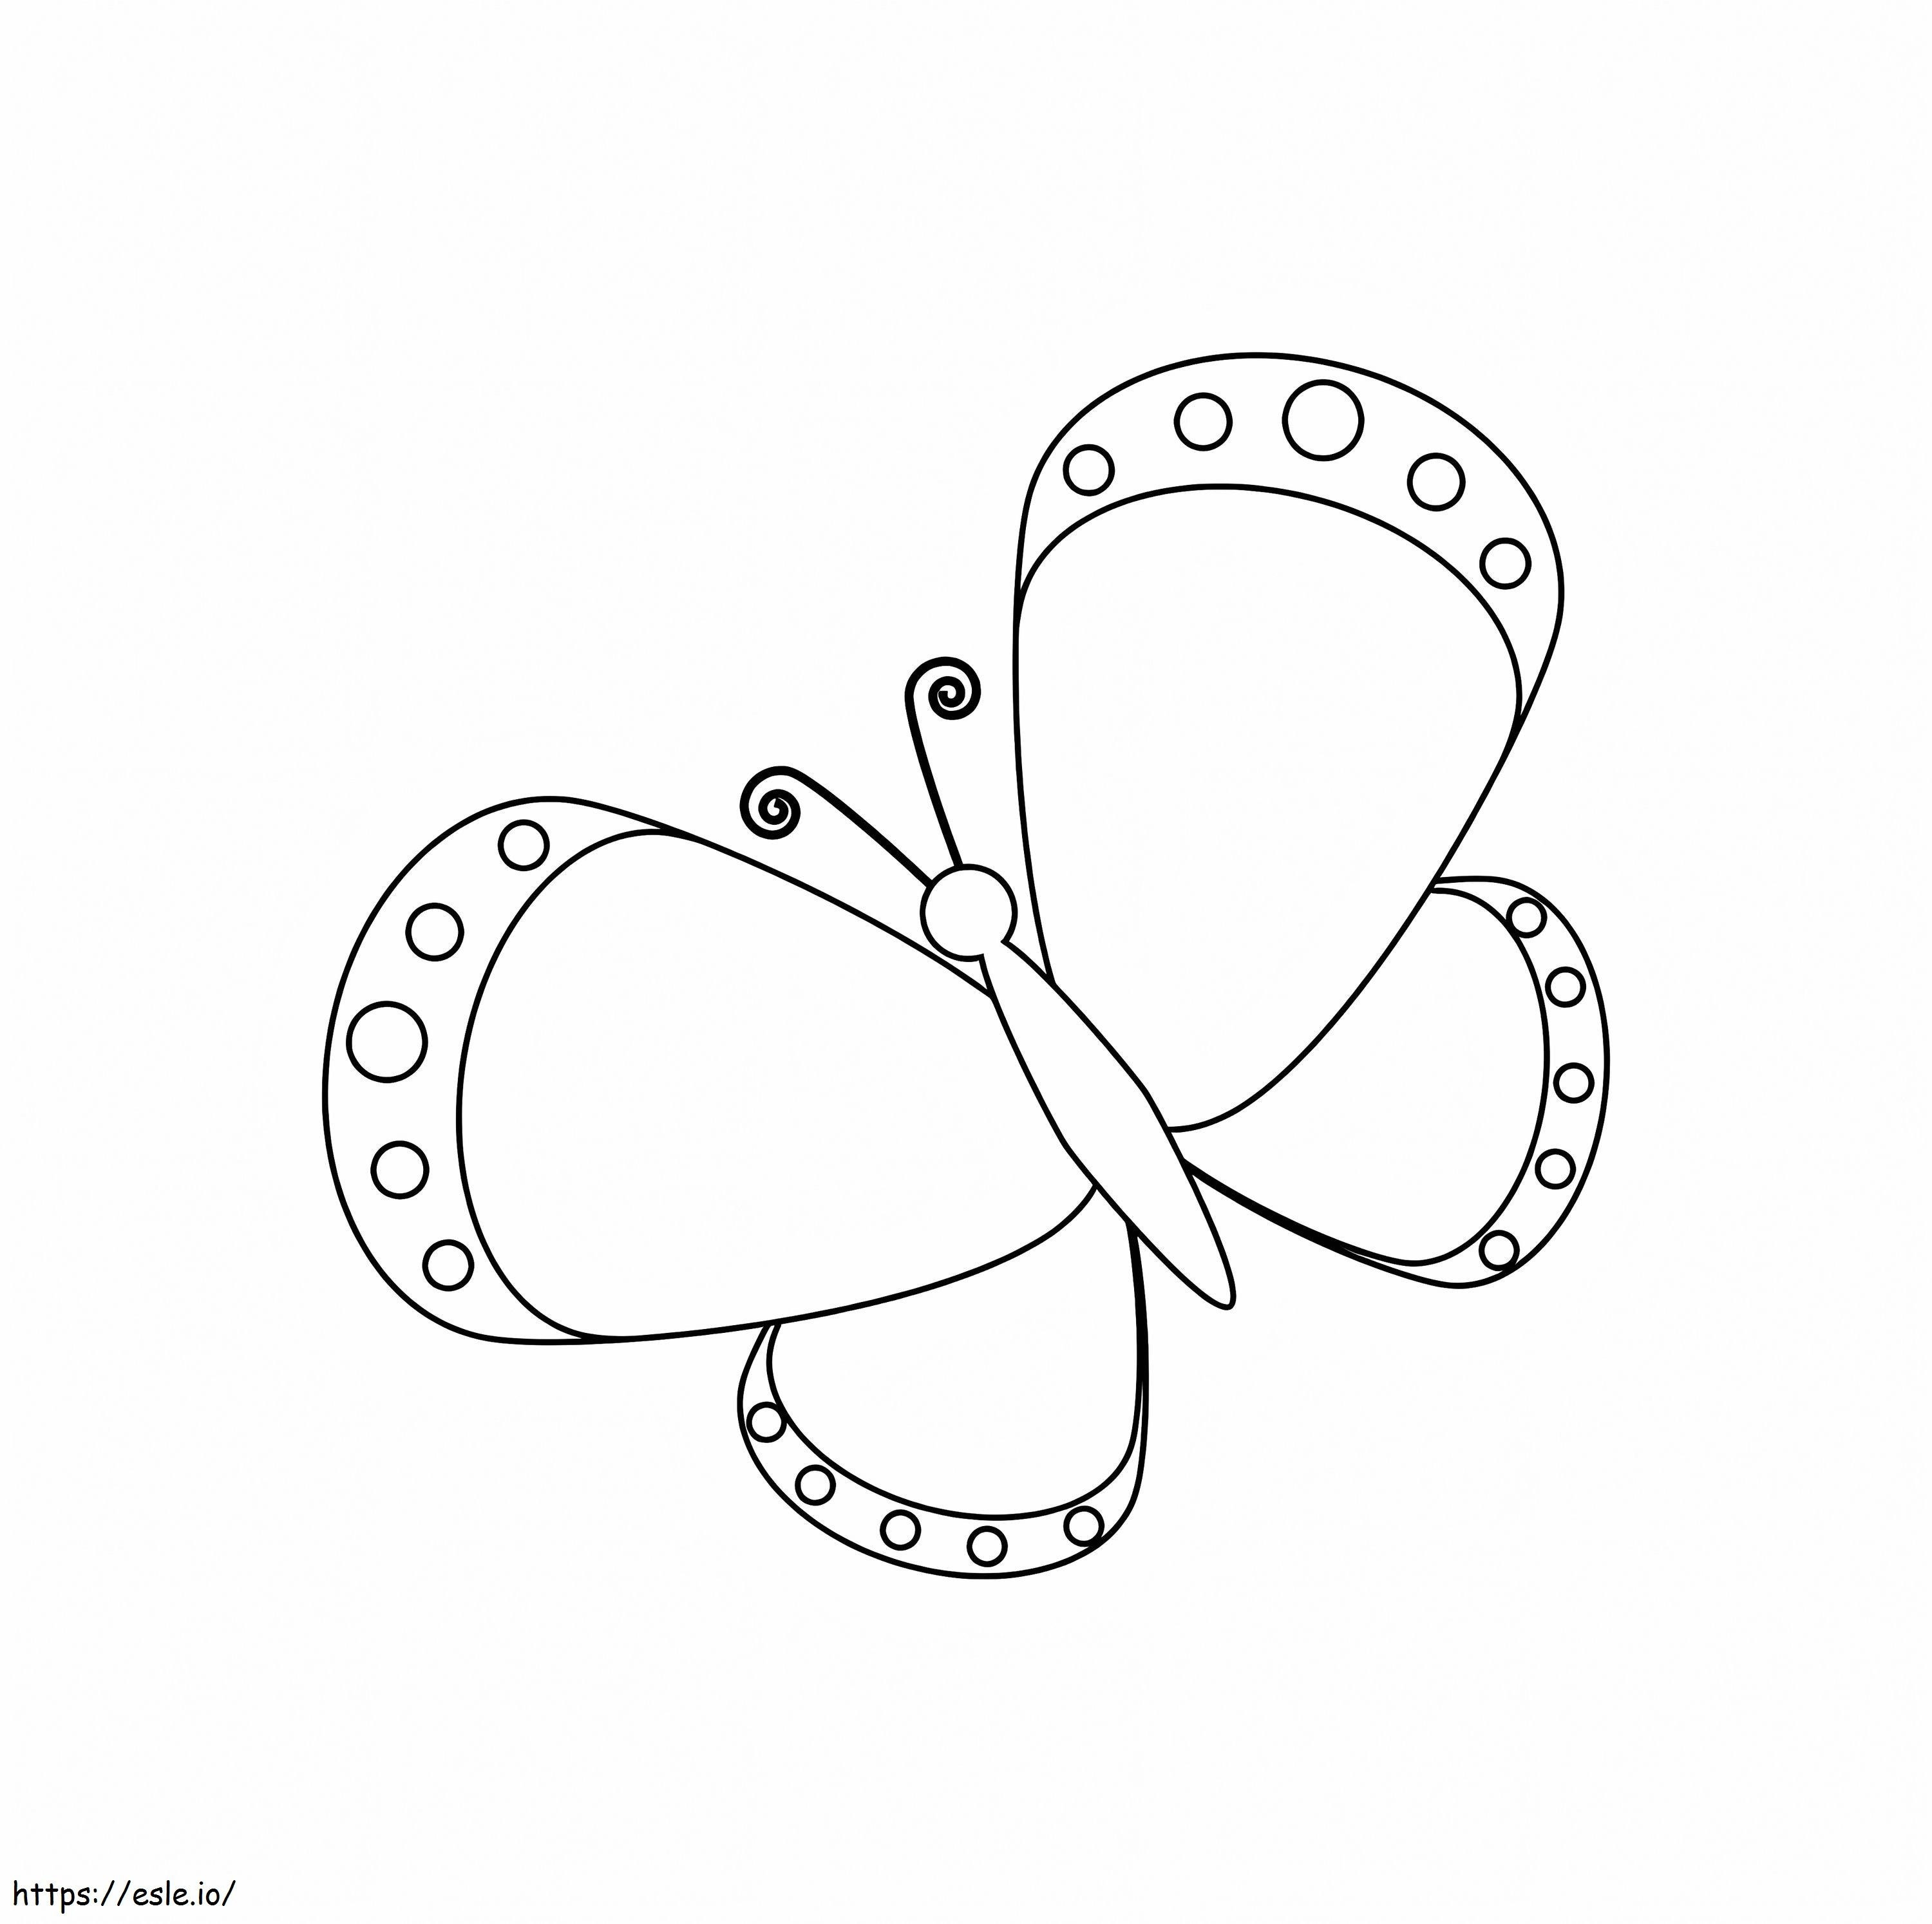 Guter Schmetterling ausmalbilder